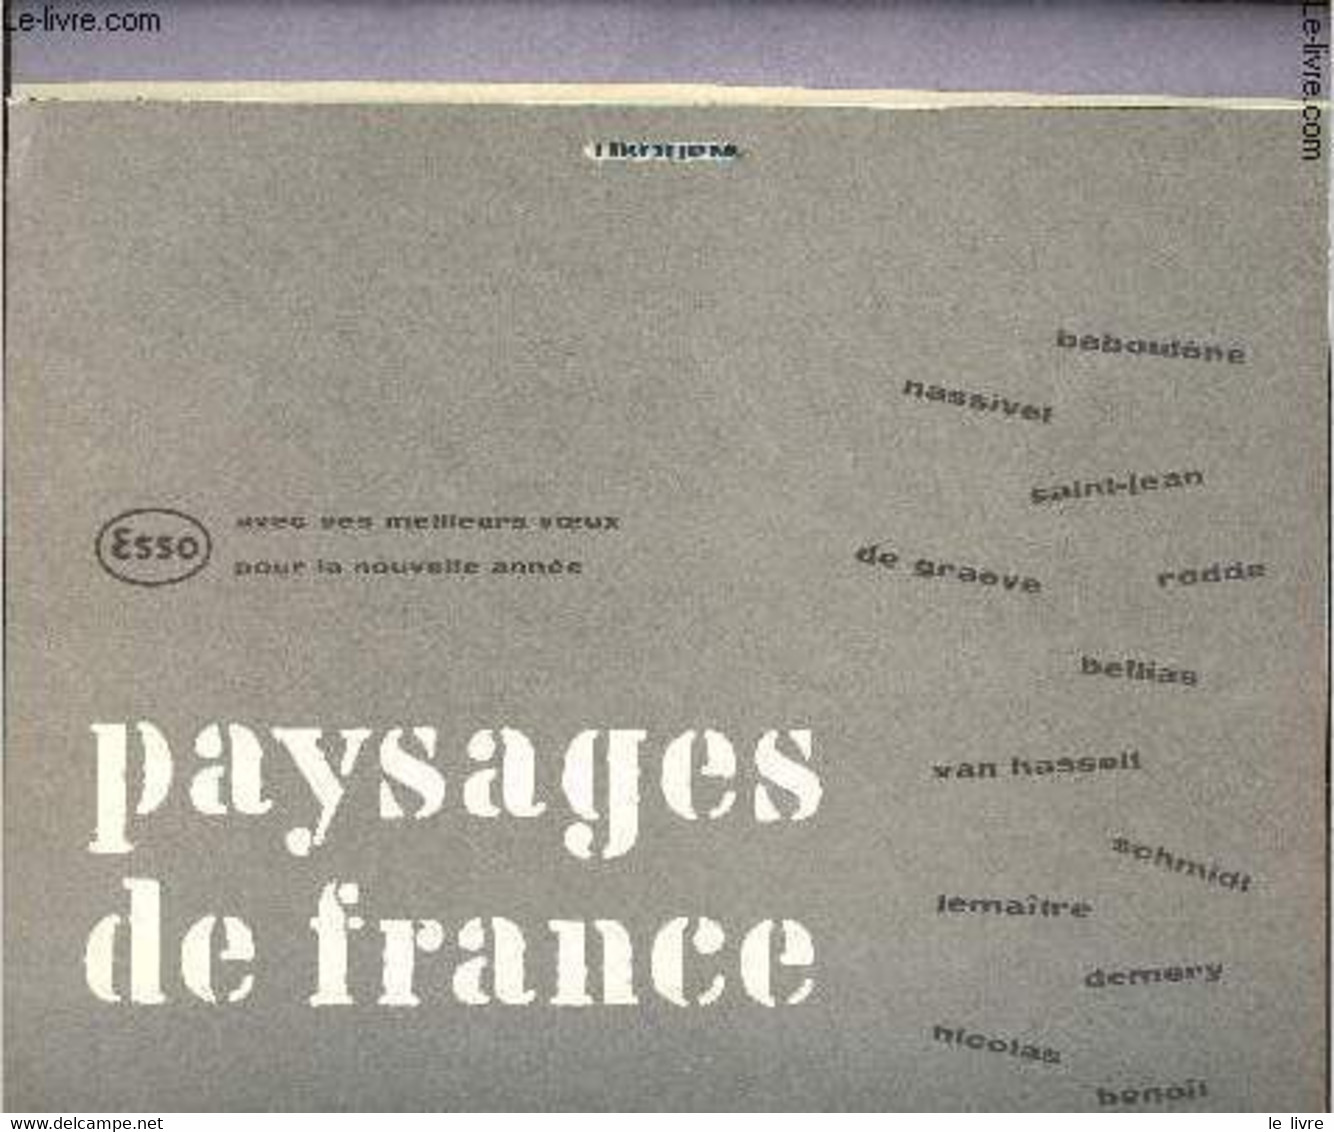 Calendrier Esso Service Du Libournais - Paysages De France - 1959 - Esso Service Du Libournais - 1959 - Agendas